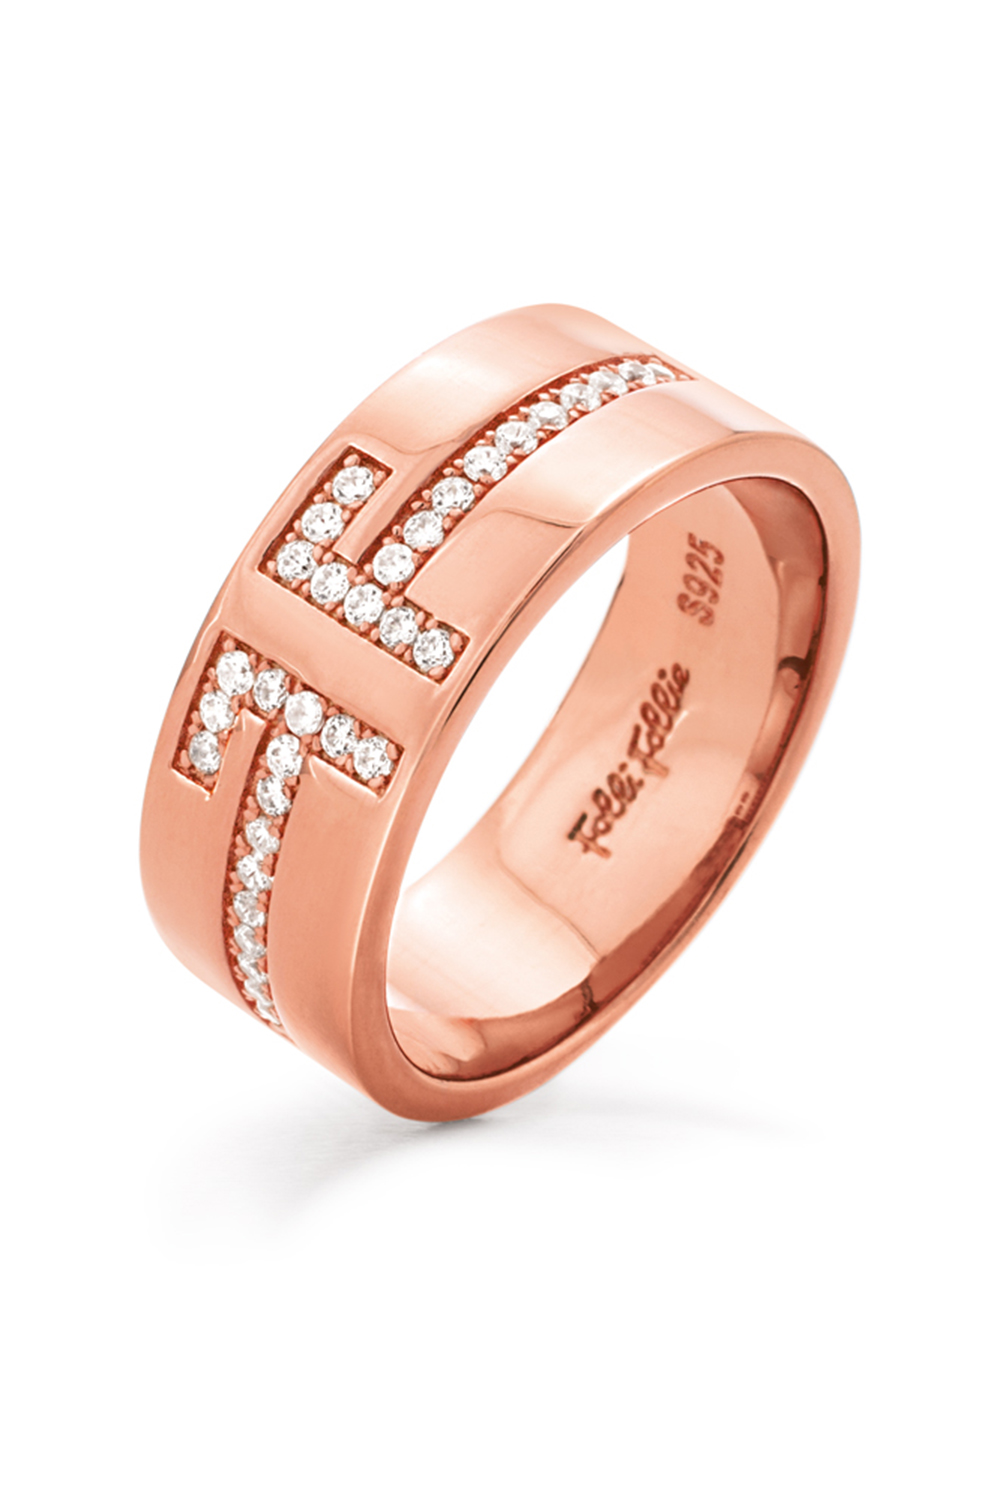 Γυναικεία/Αξεσουάρ/Κοσμήματα/Δαχτυλίδια FOLLI FOLLIE - Γυναικείο ασημένιο δαχτυλίδι FOLLI FOLLIE MY FF ροζ χρυσό